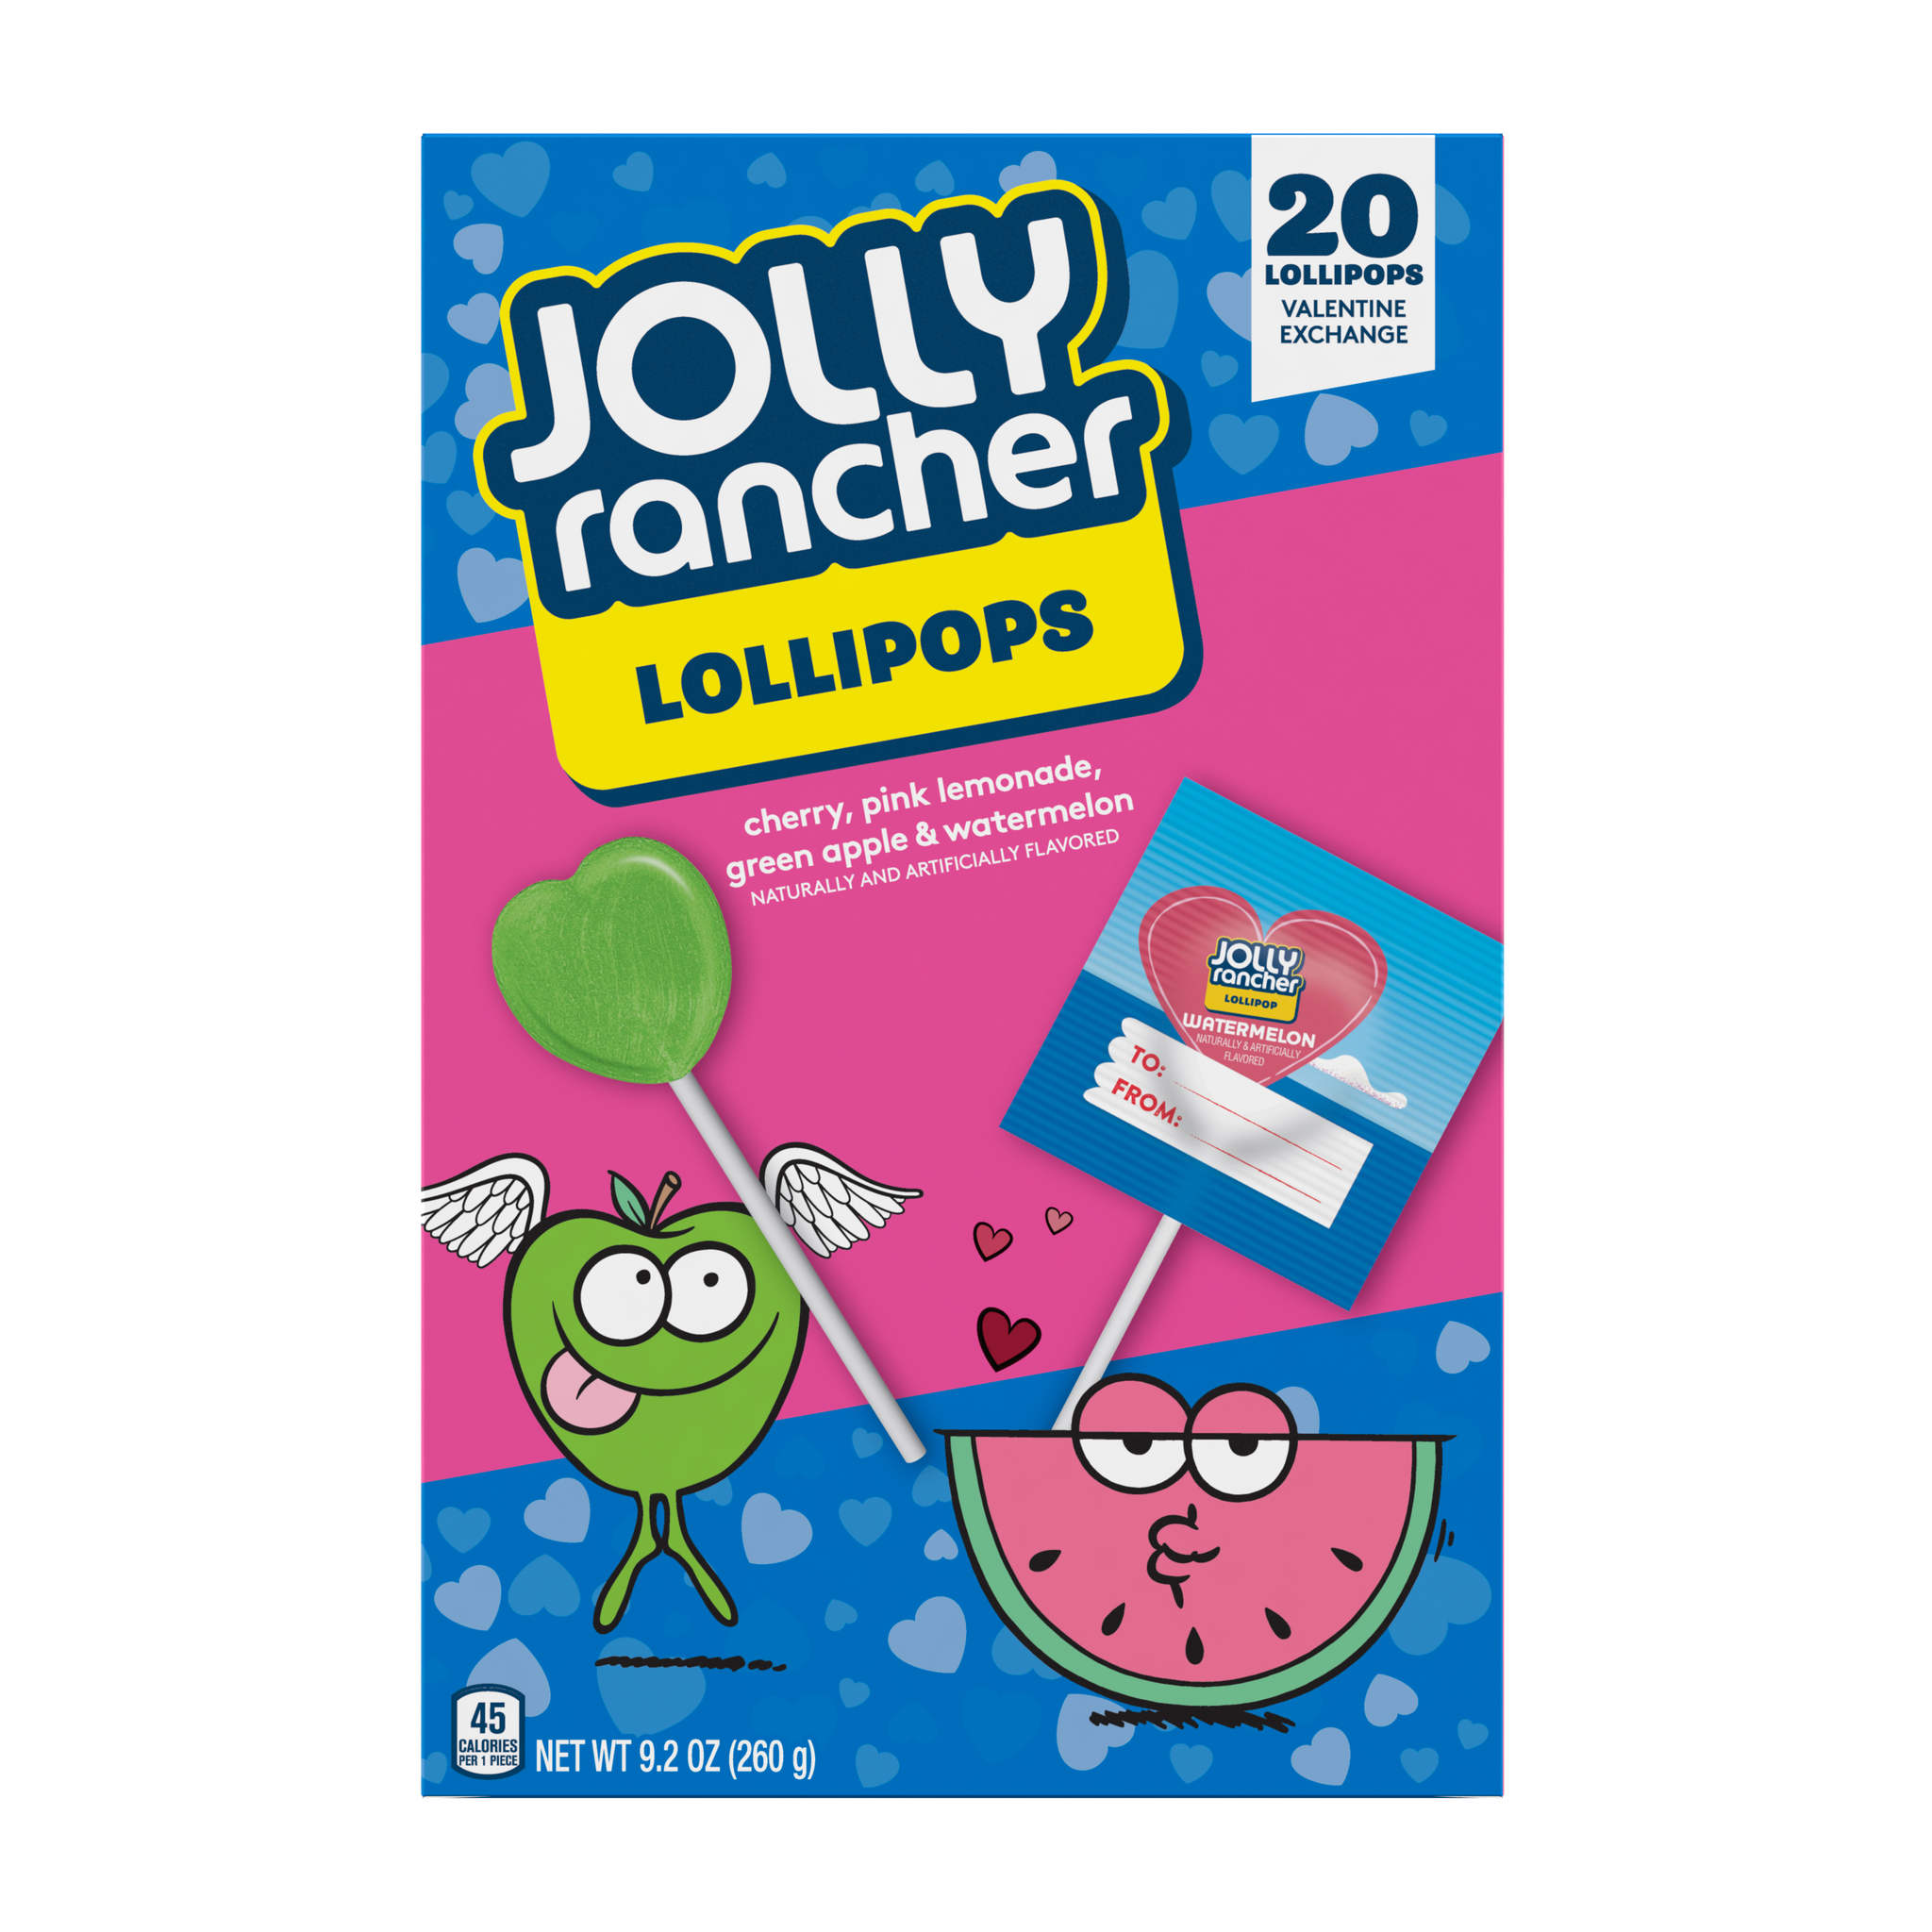 Jolly Rancher Valentine's Exchange Lollipops, 20ct, 9.2oz